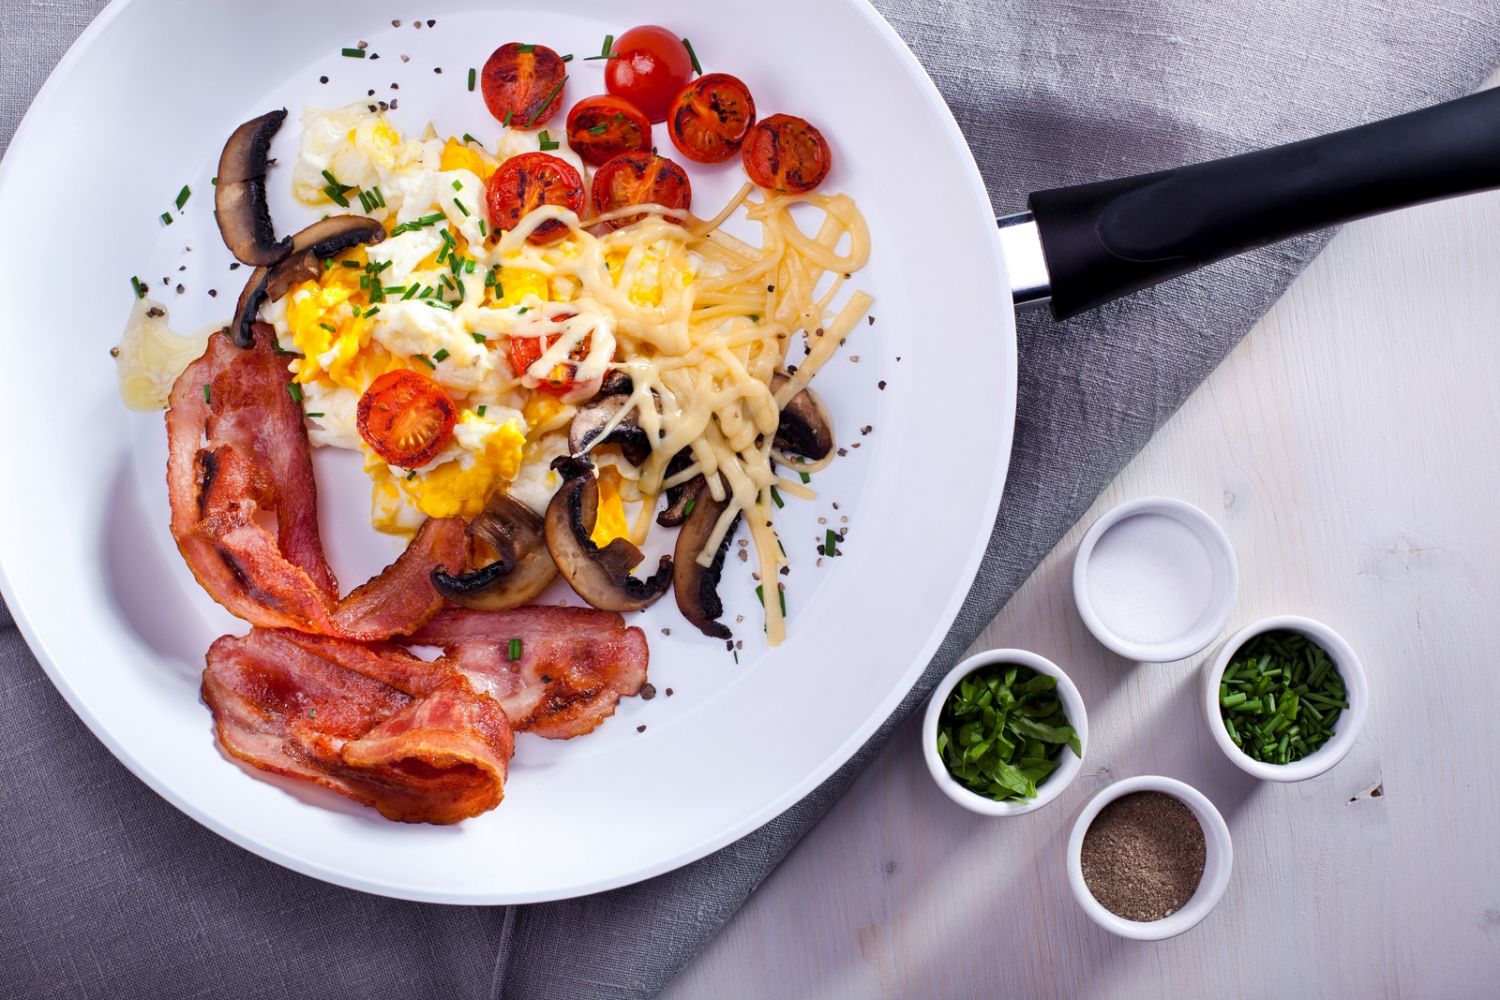 Śniadanie z czterech krańców świata – co się jada za granicą?